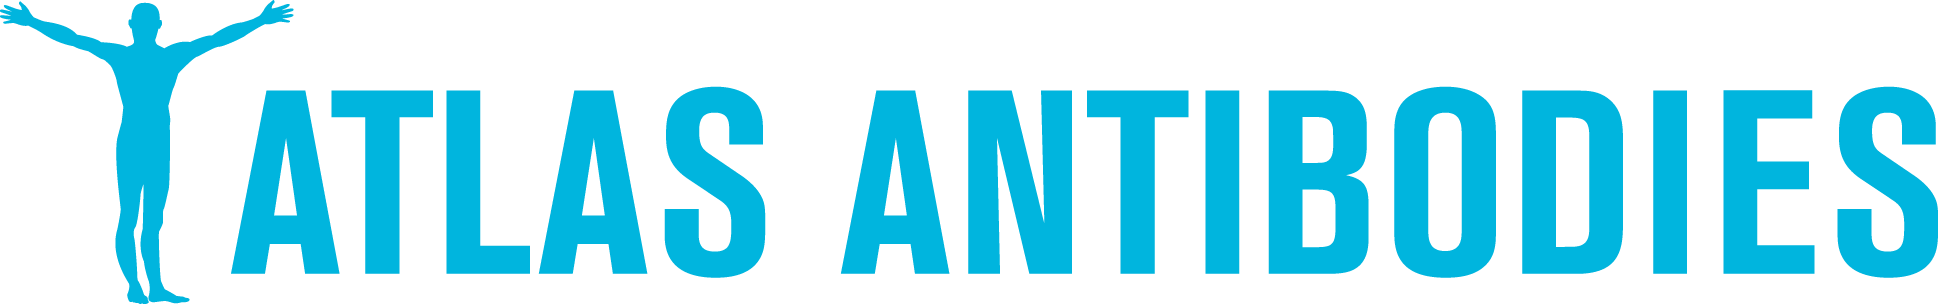 atlas_antibodies_logo